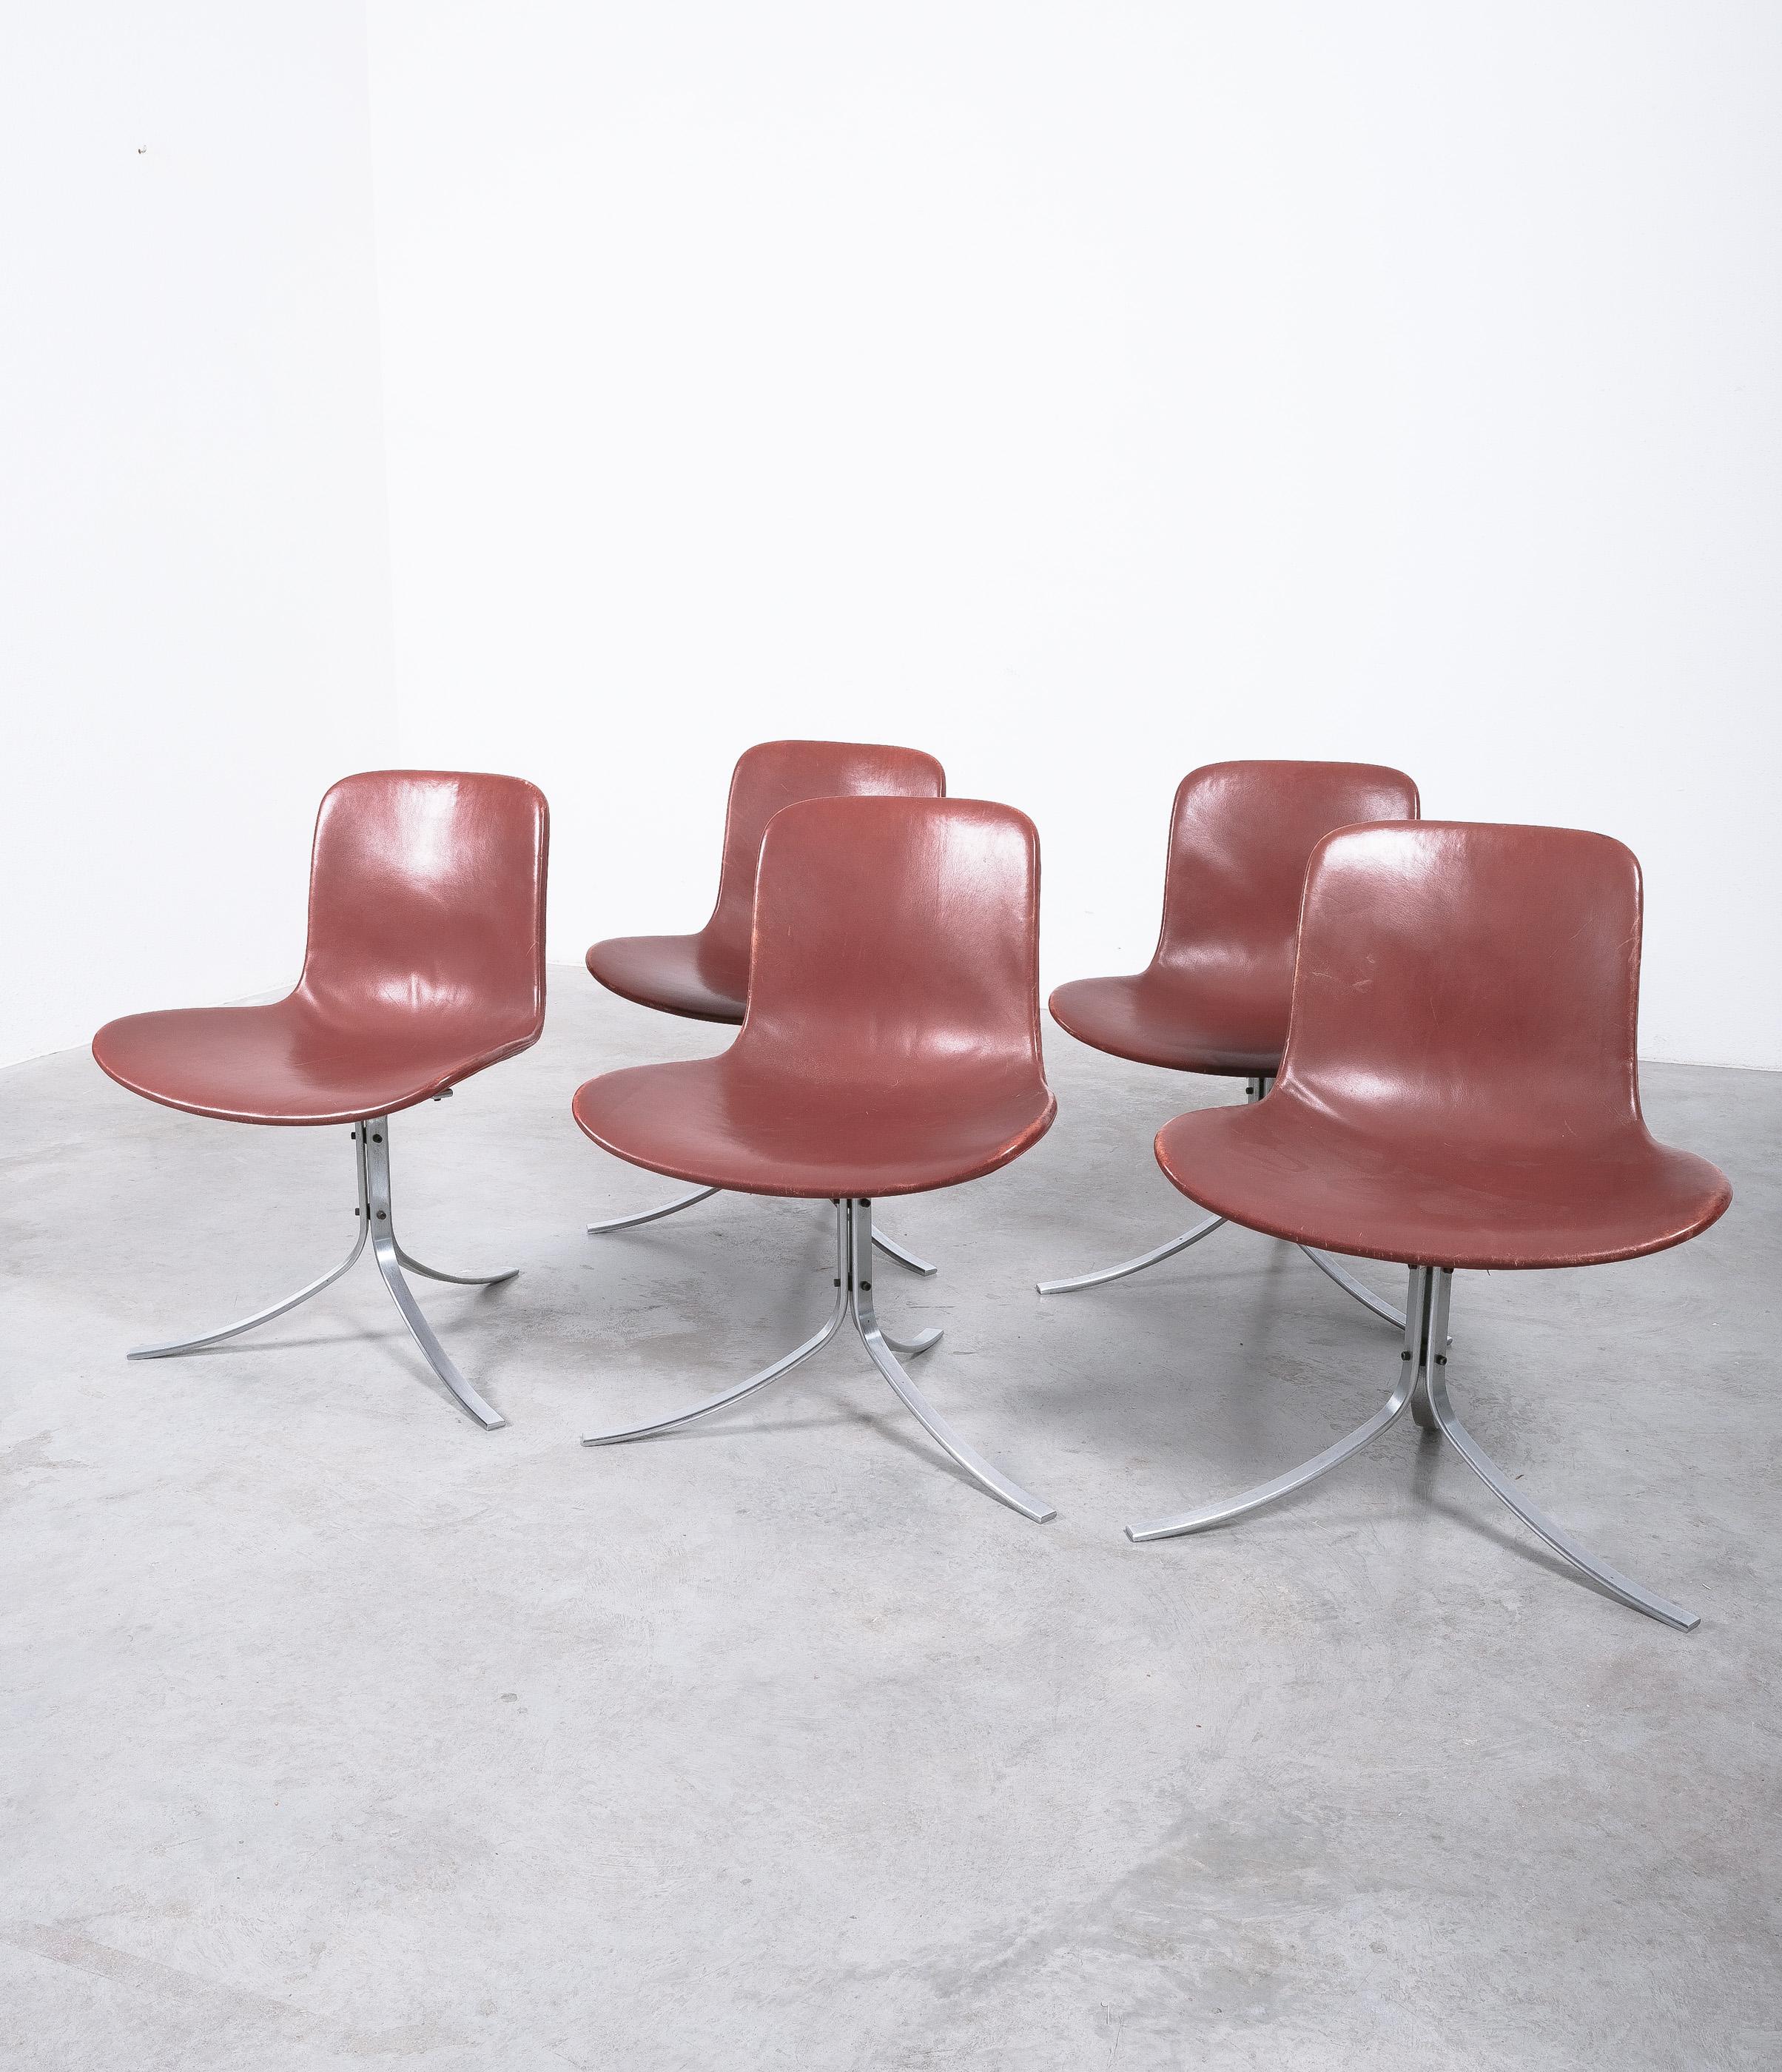 Un ensemble de cinq chaises CIRCA originales du début des années 1960 pour E. Kold Condensen (marqué), produites vers 1960-1970, en très bon état.

Superbe ensemble de chaises classiques sculpturales de Poul Kjearholm en très bon état, marque de